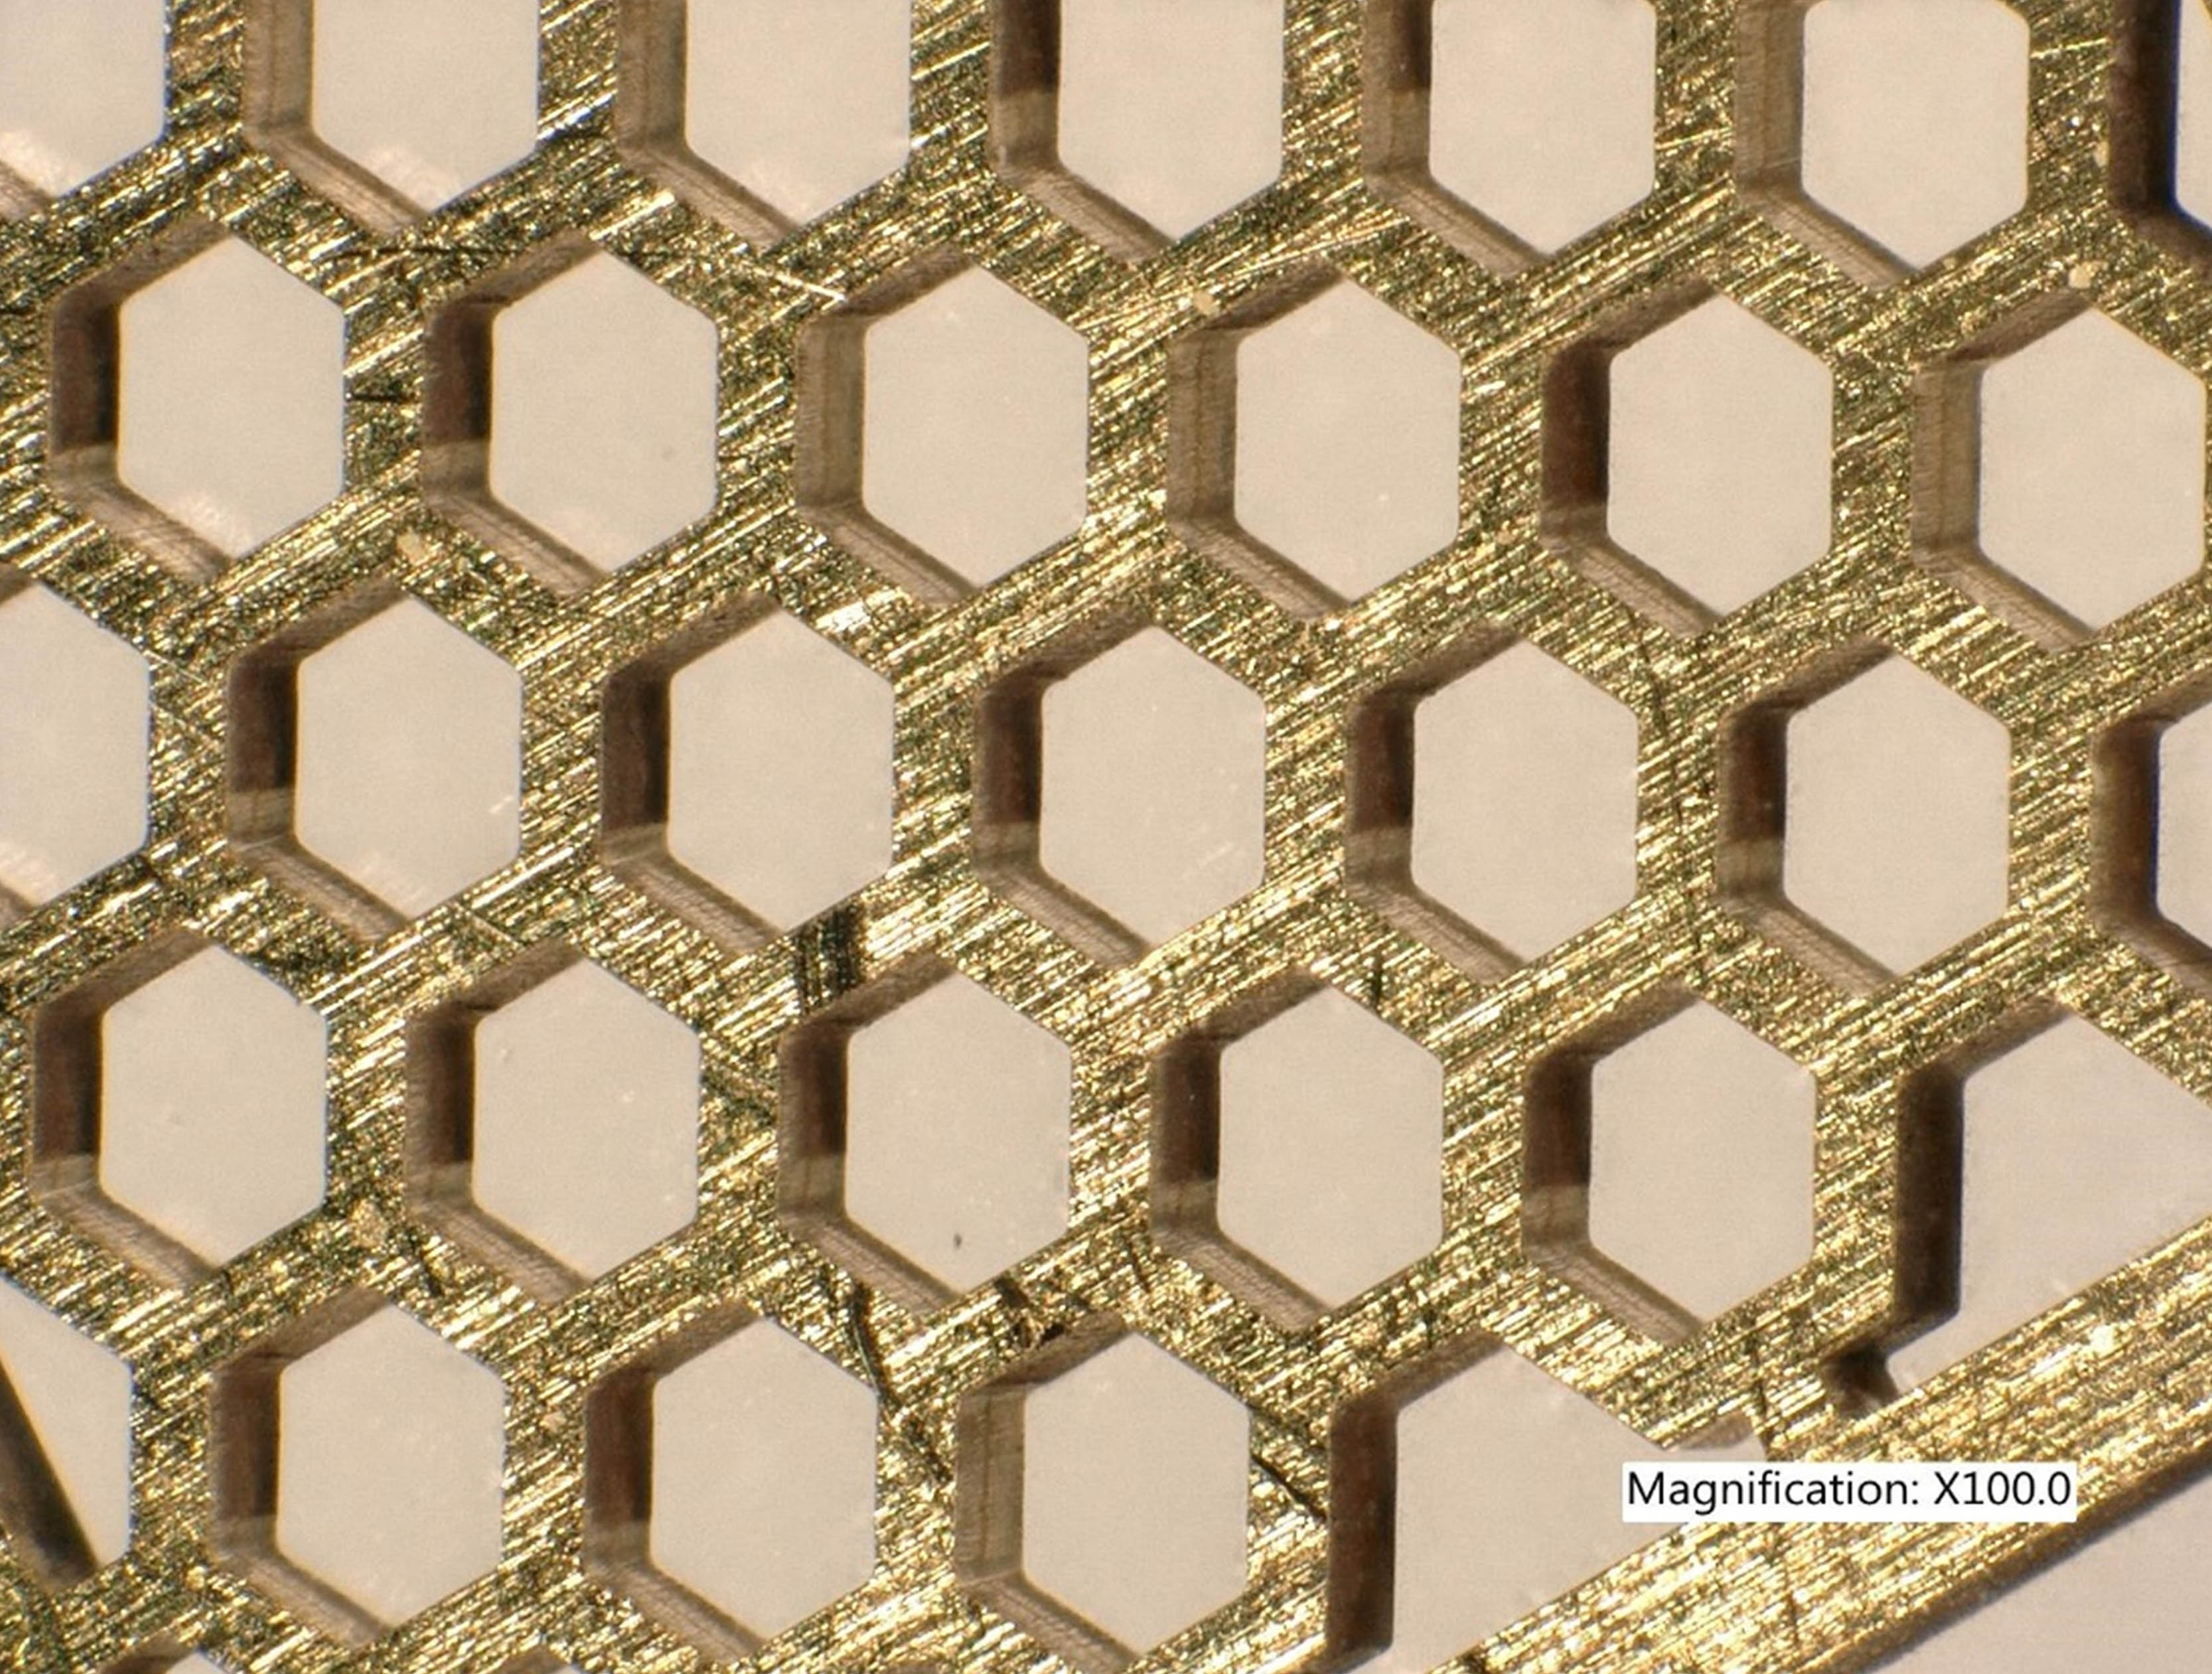 Honeycomb test cut